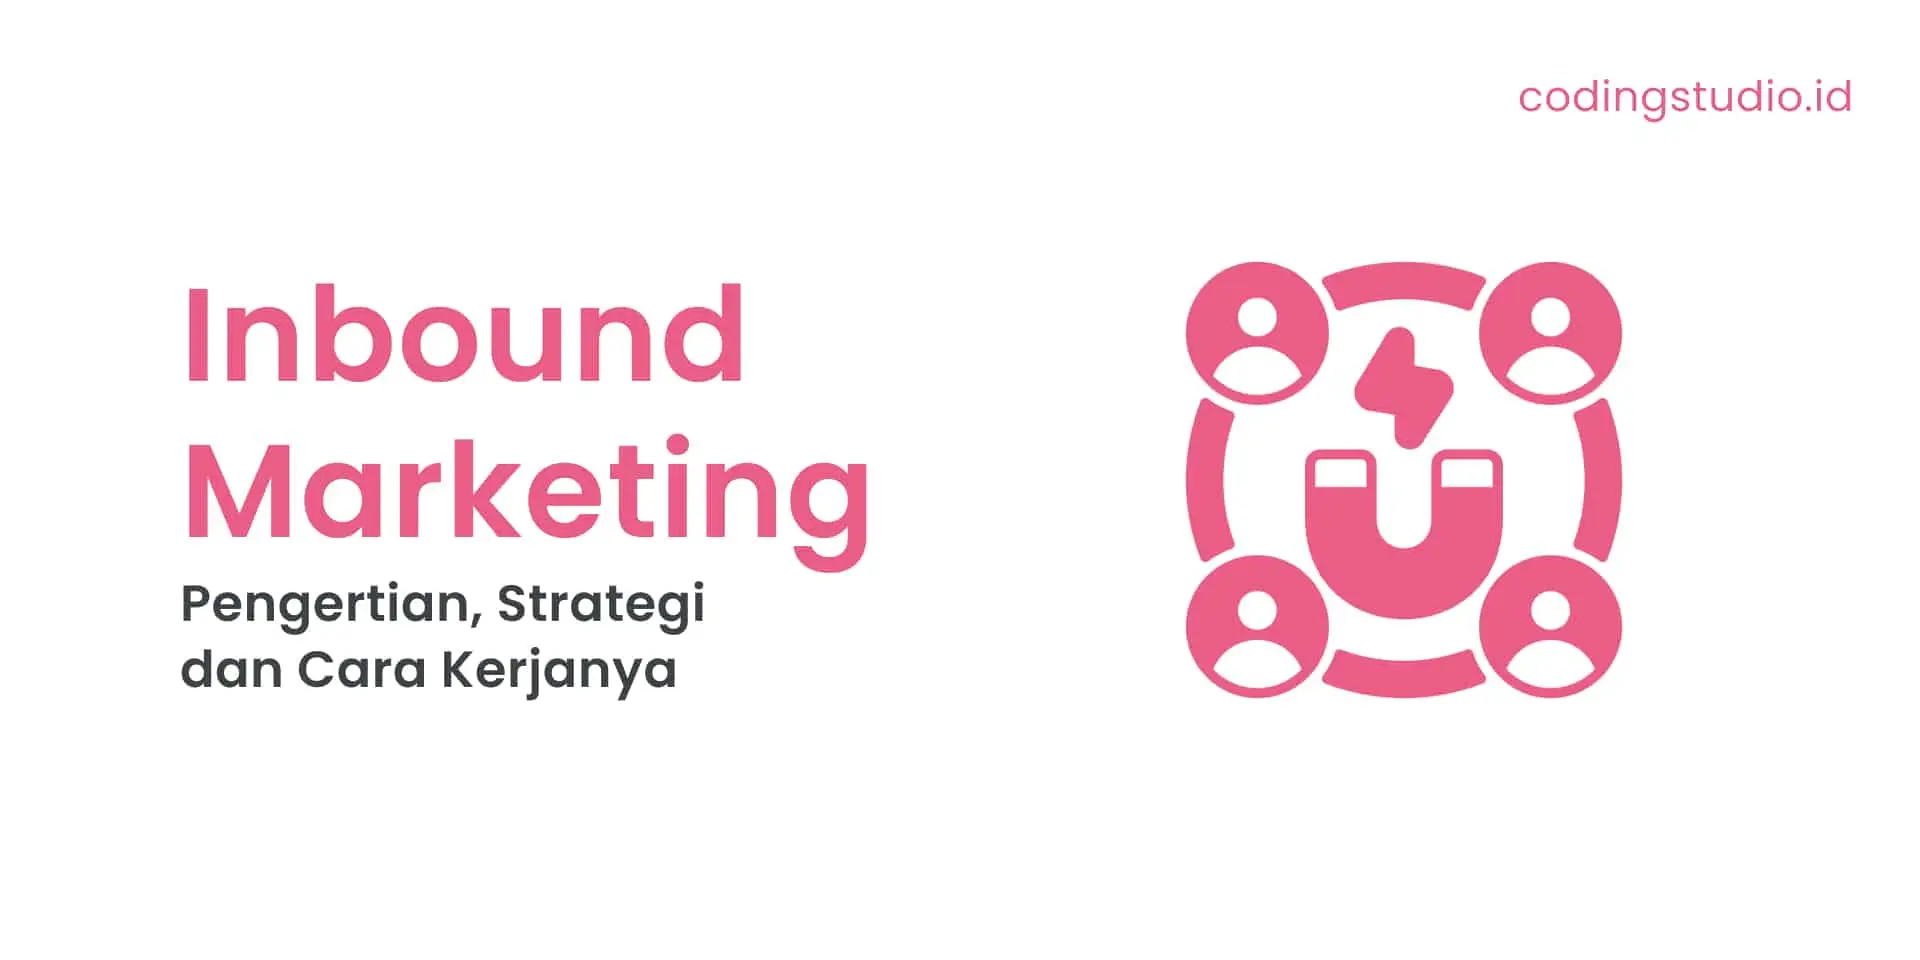 Inbound Marketing Adalah Pengertian, Strategi dan Cara Kerjanya